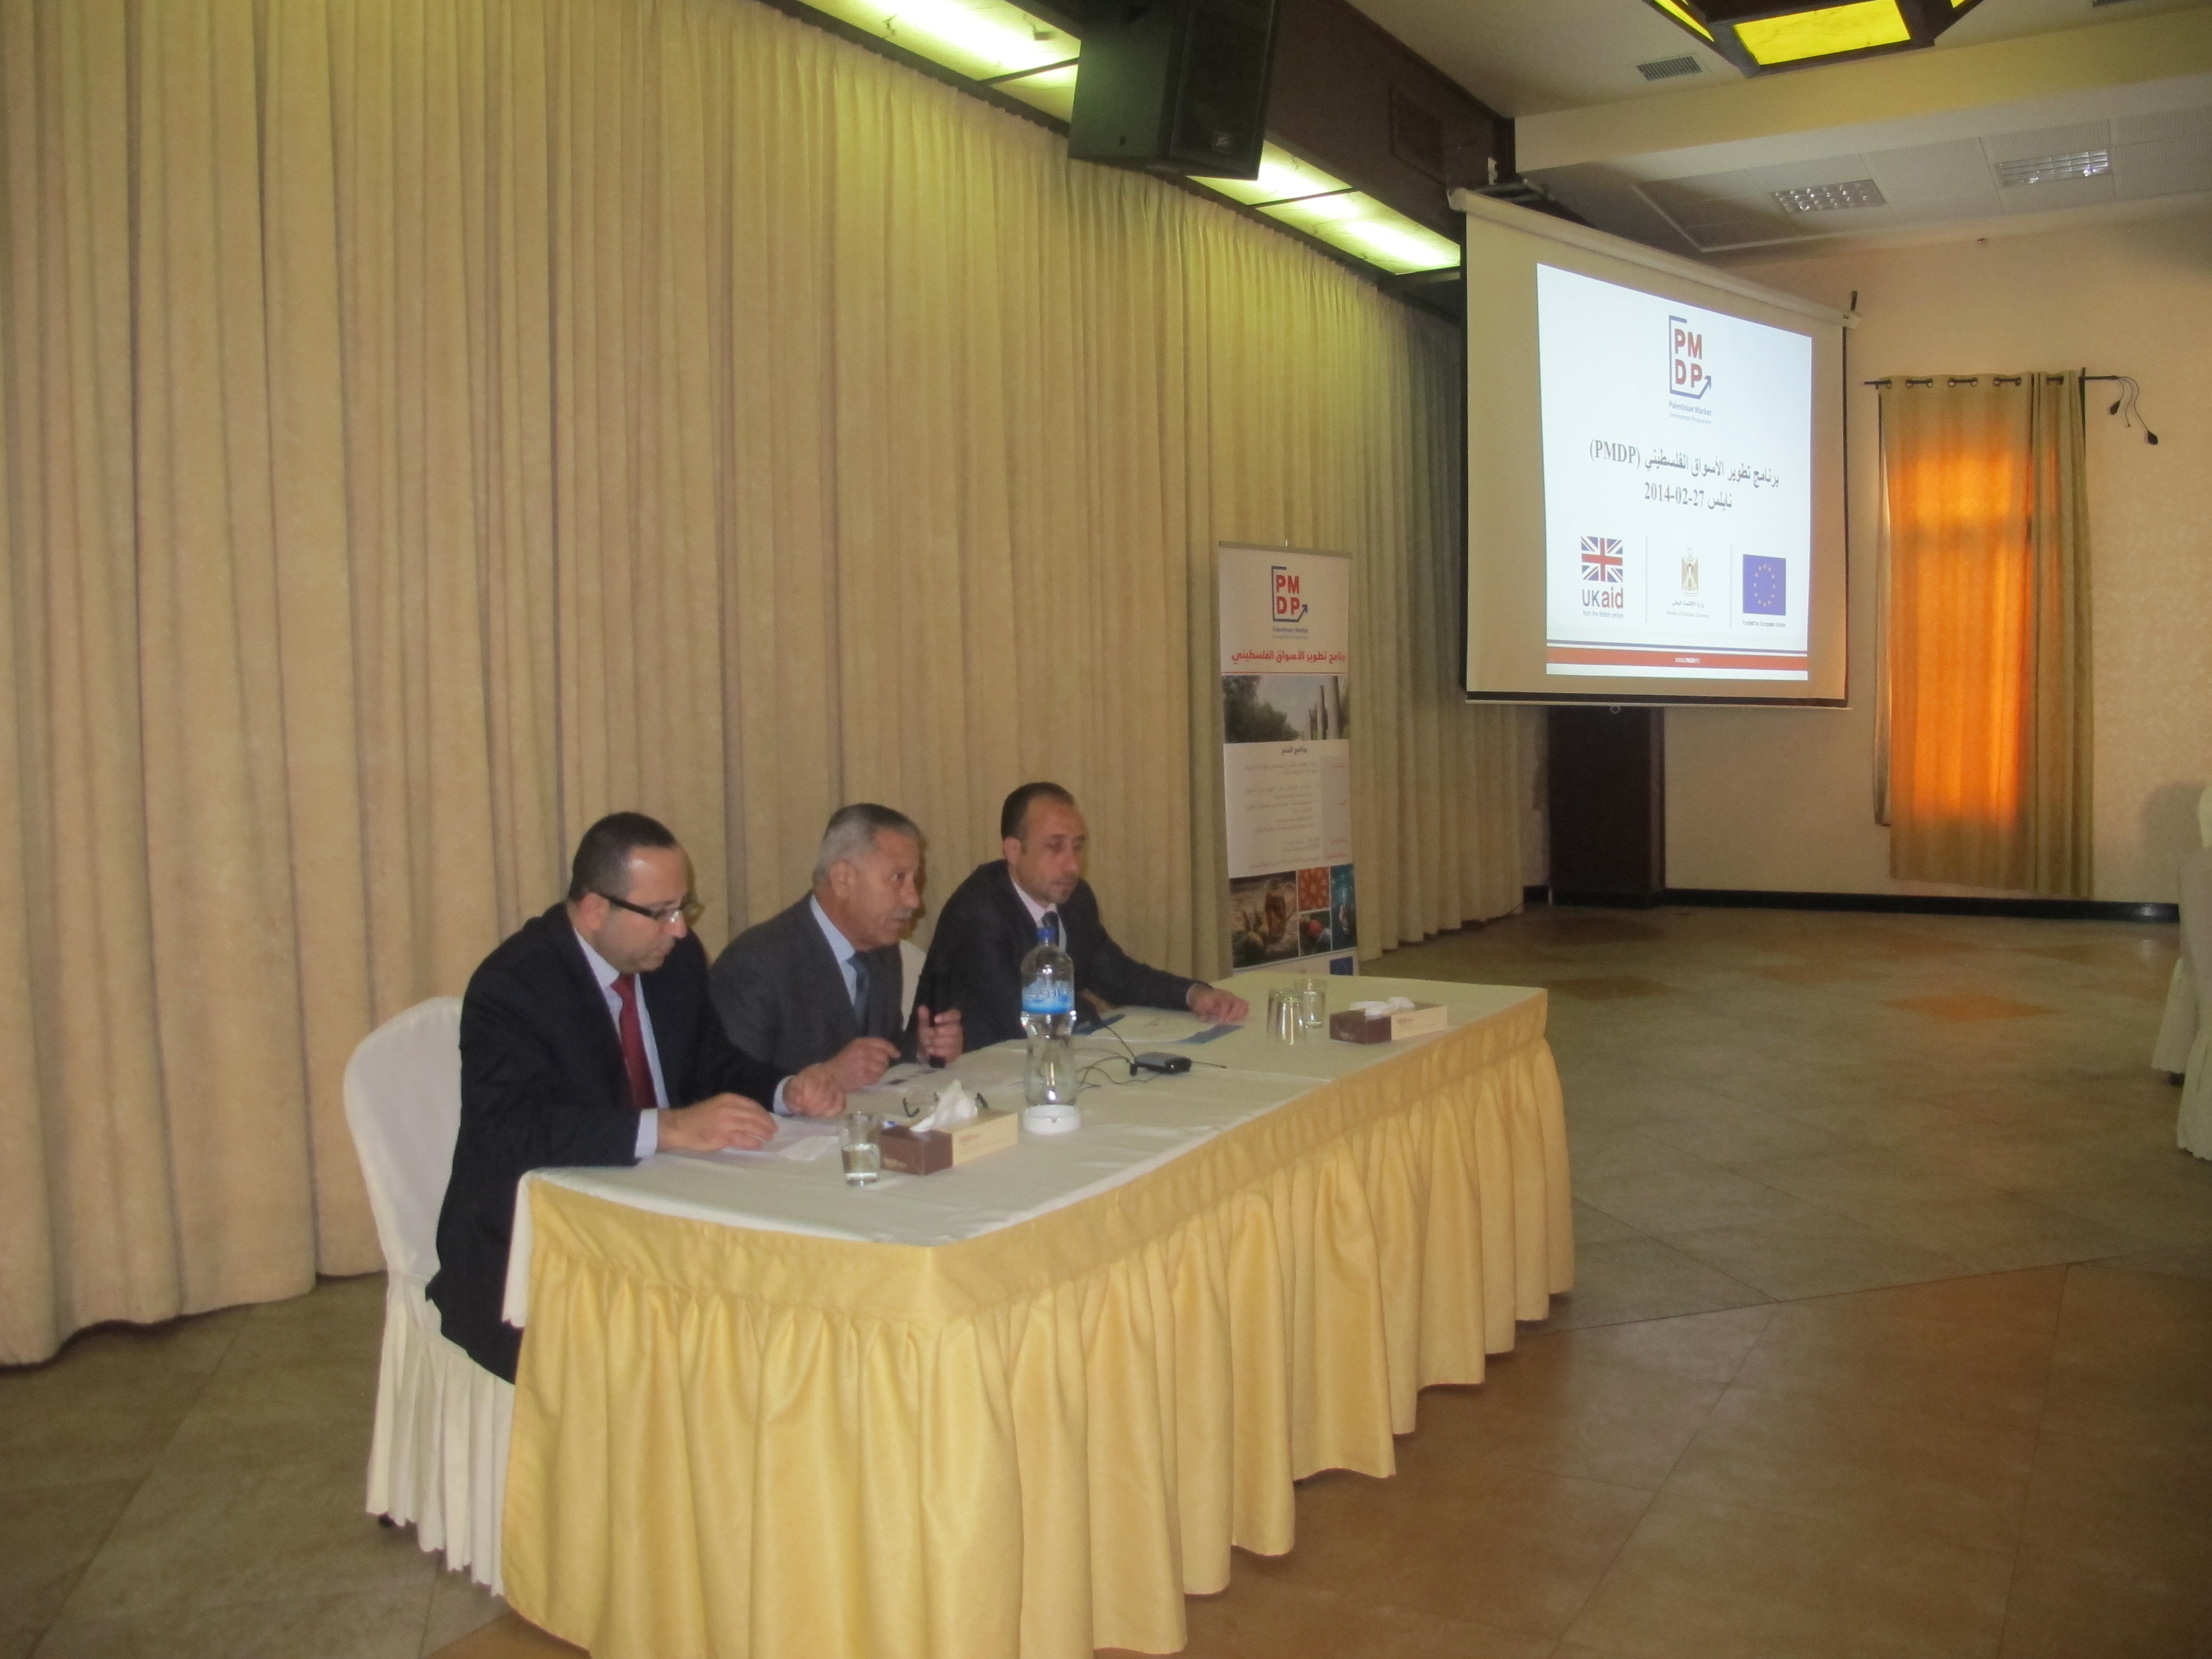 لدعم الصناعة الفلسطينية  ورشة عمل في نابلس حول برنامج تطوير الأسواق الفلسطيني  ( PMDP)27/2/2014